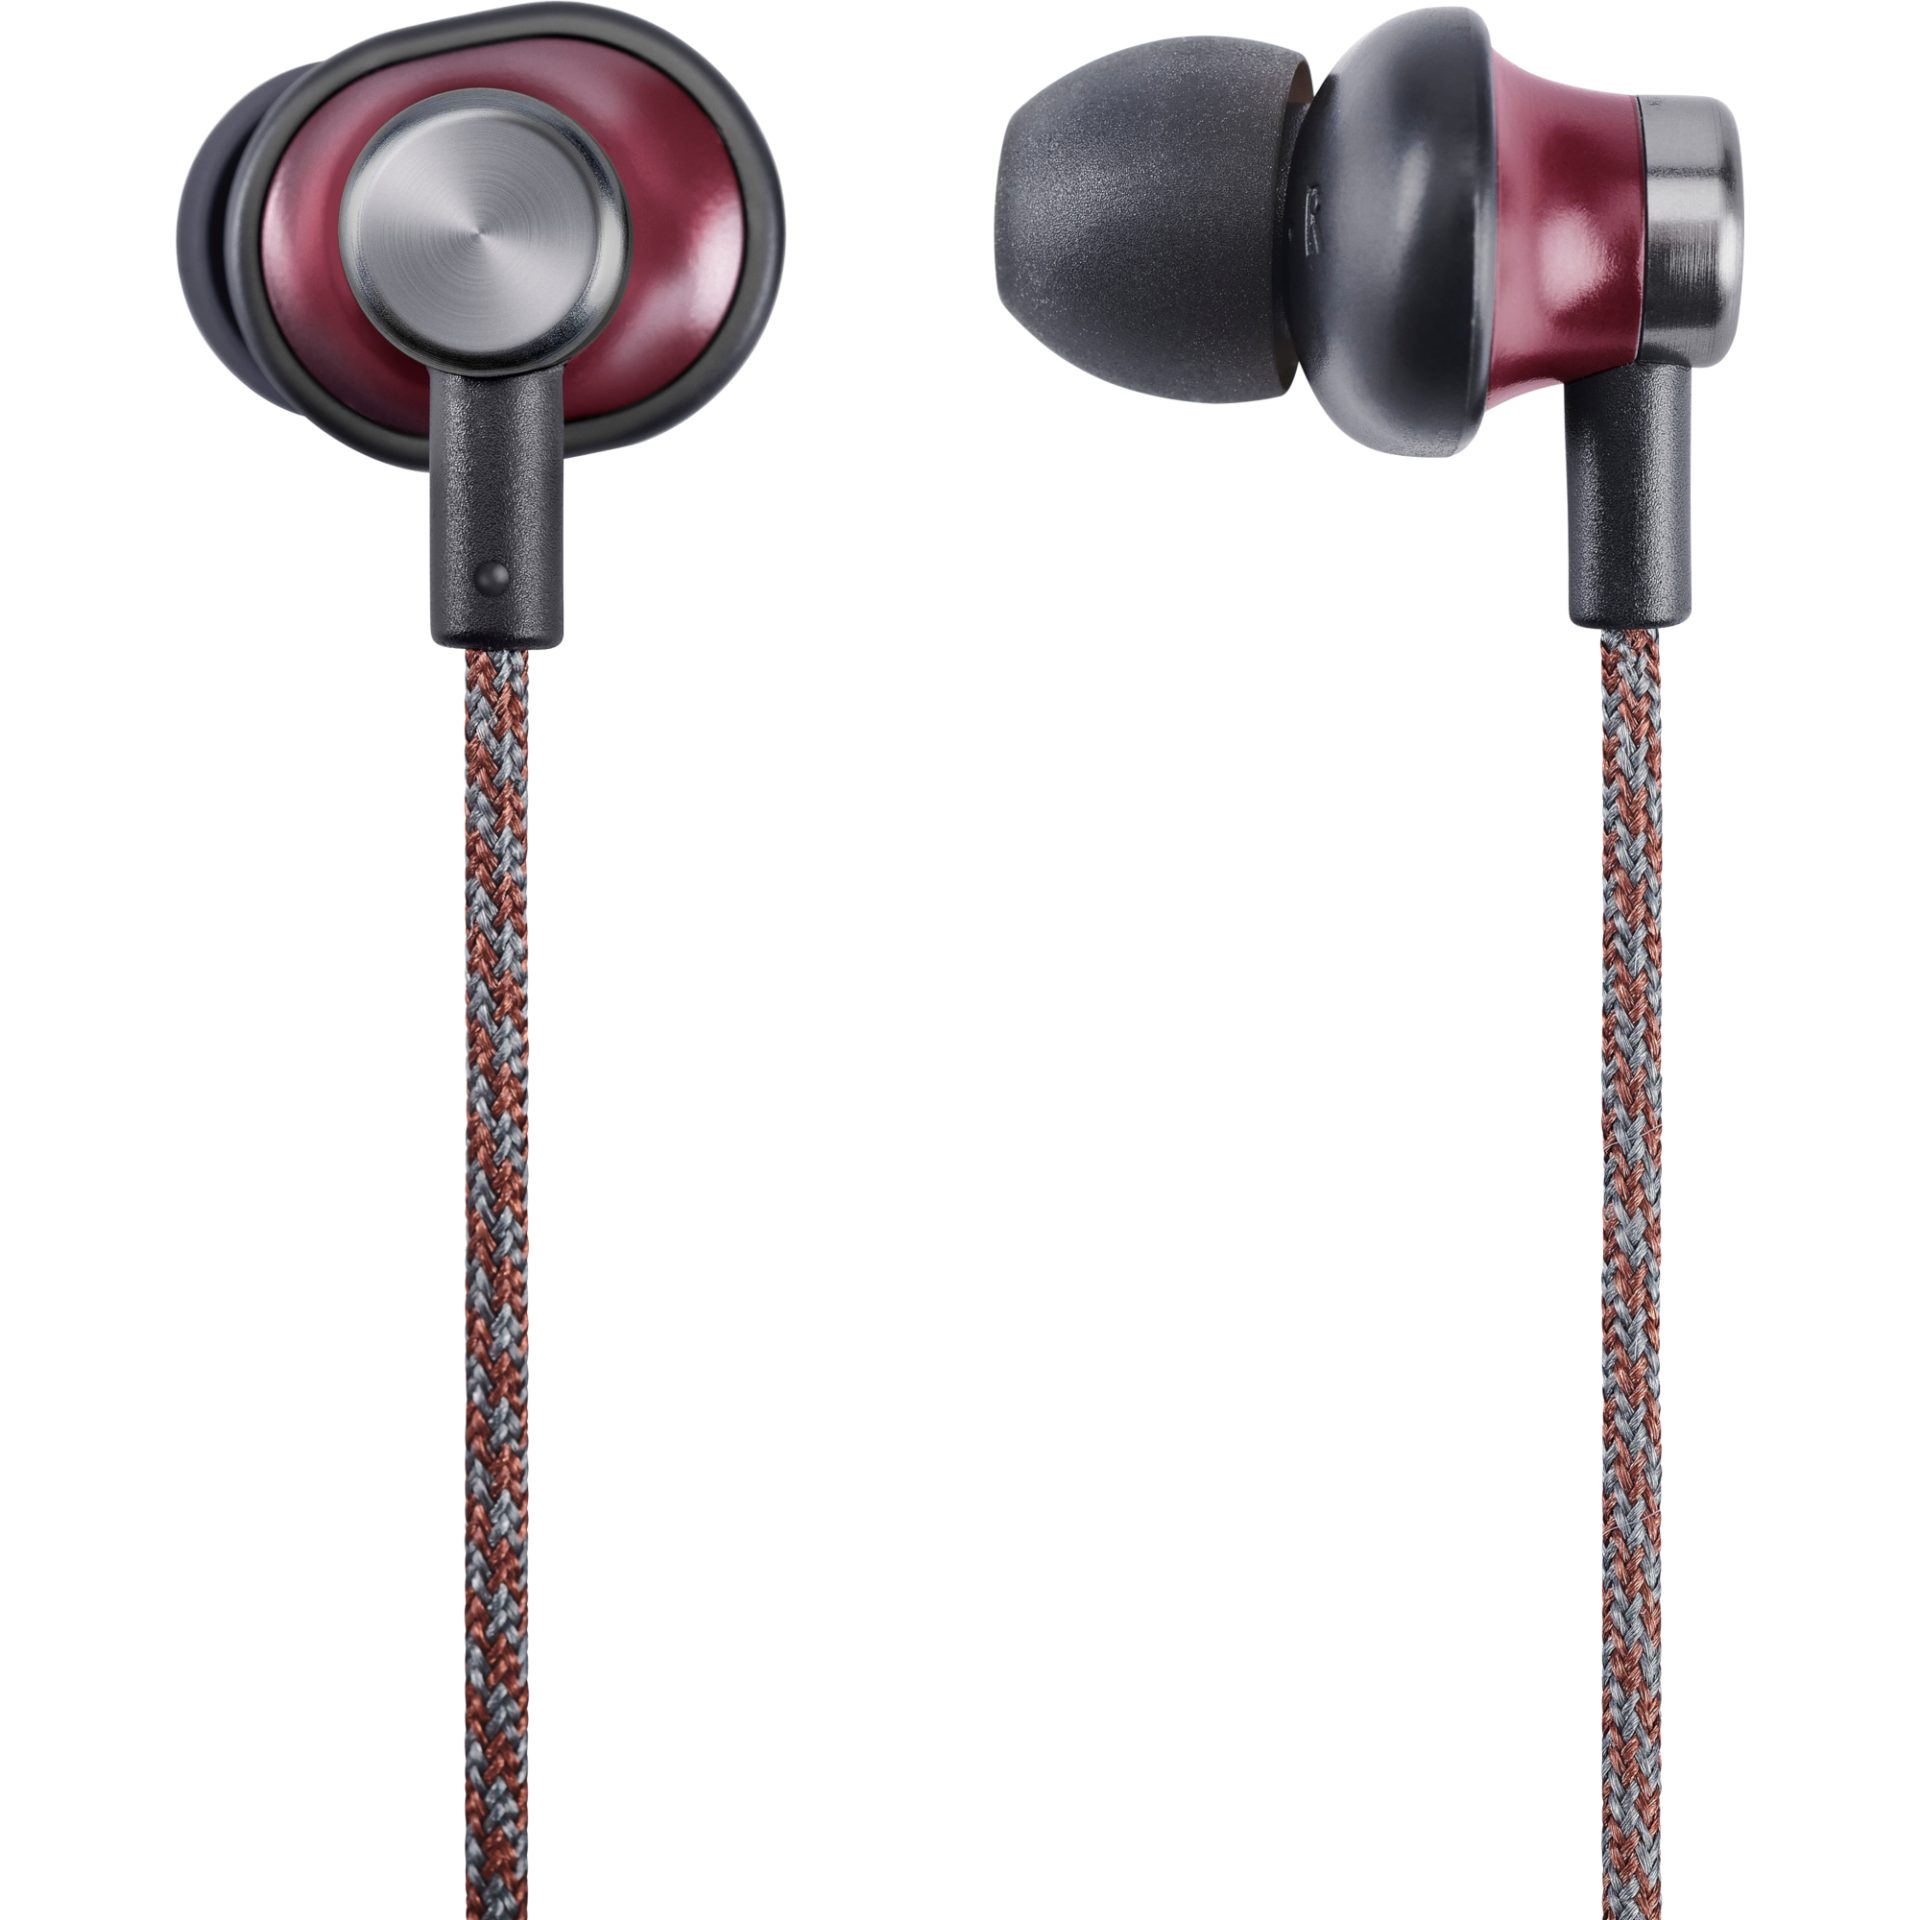 Panasonic RP-HTX20 bezdrátová retro Bluetooth sluchátka (ERGOFIT PLUS, 9mm neodymový magnetické měniče, hlasové ovládání), červená